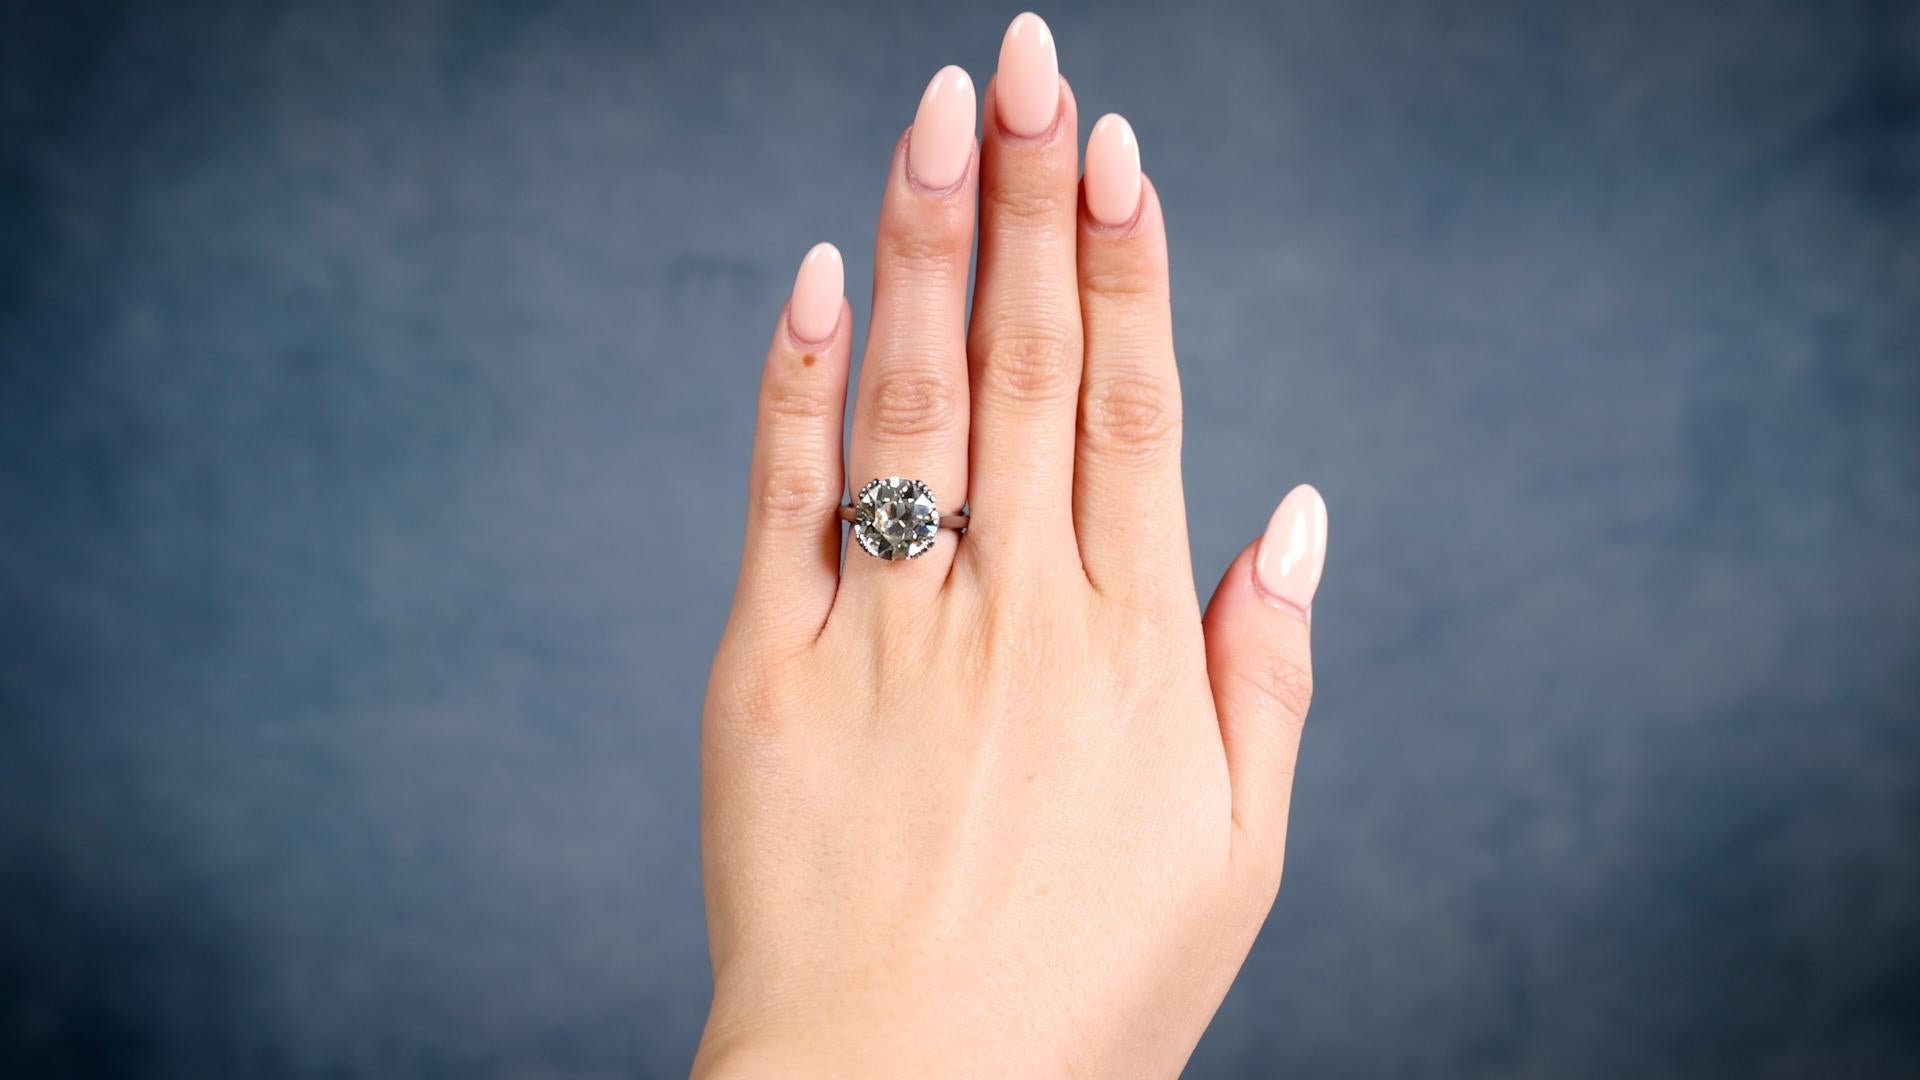 Ein Art Deco GIA 4.78 Karat Old European Cut Diamond Platinum Solitär Ring. Mit einem GIA-Diamanten im alten europäischen Schliff von 4,78 Karat, begleitet von der GIA-Nummer 2235195714, die besagt, dass der Diamant die Farbe O-P und die Reinheit